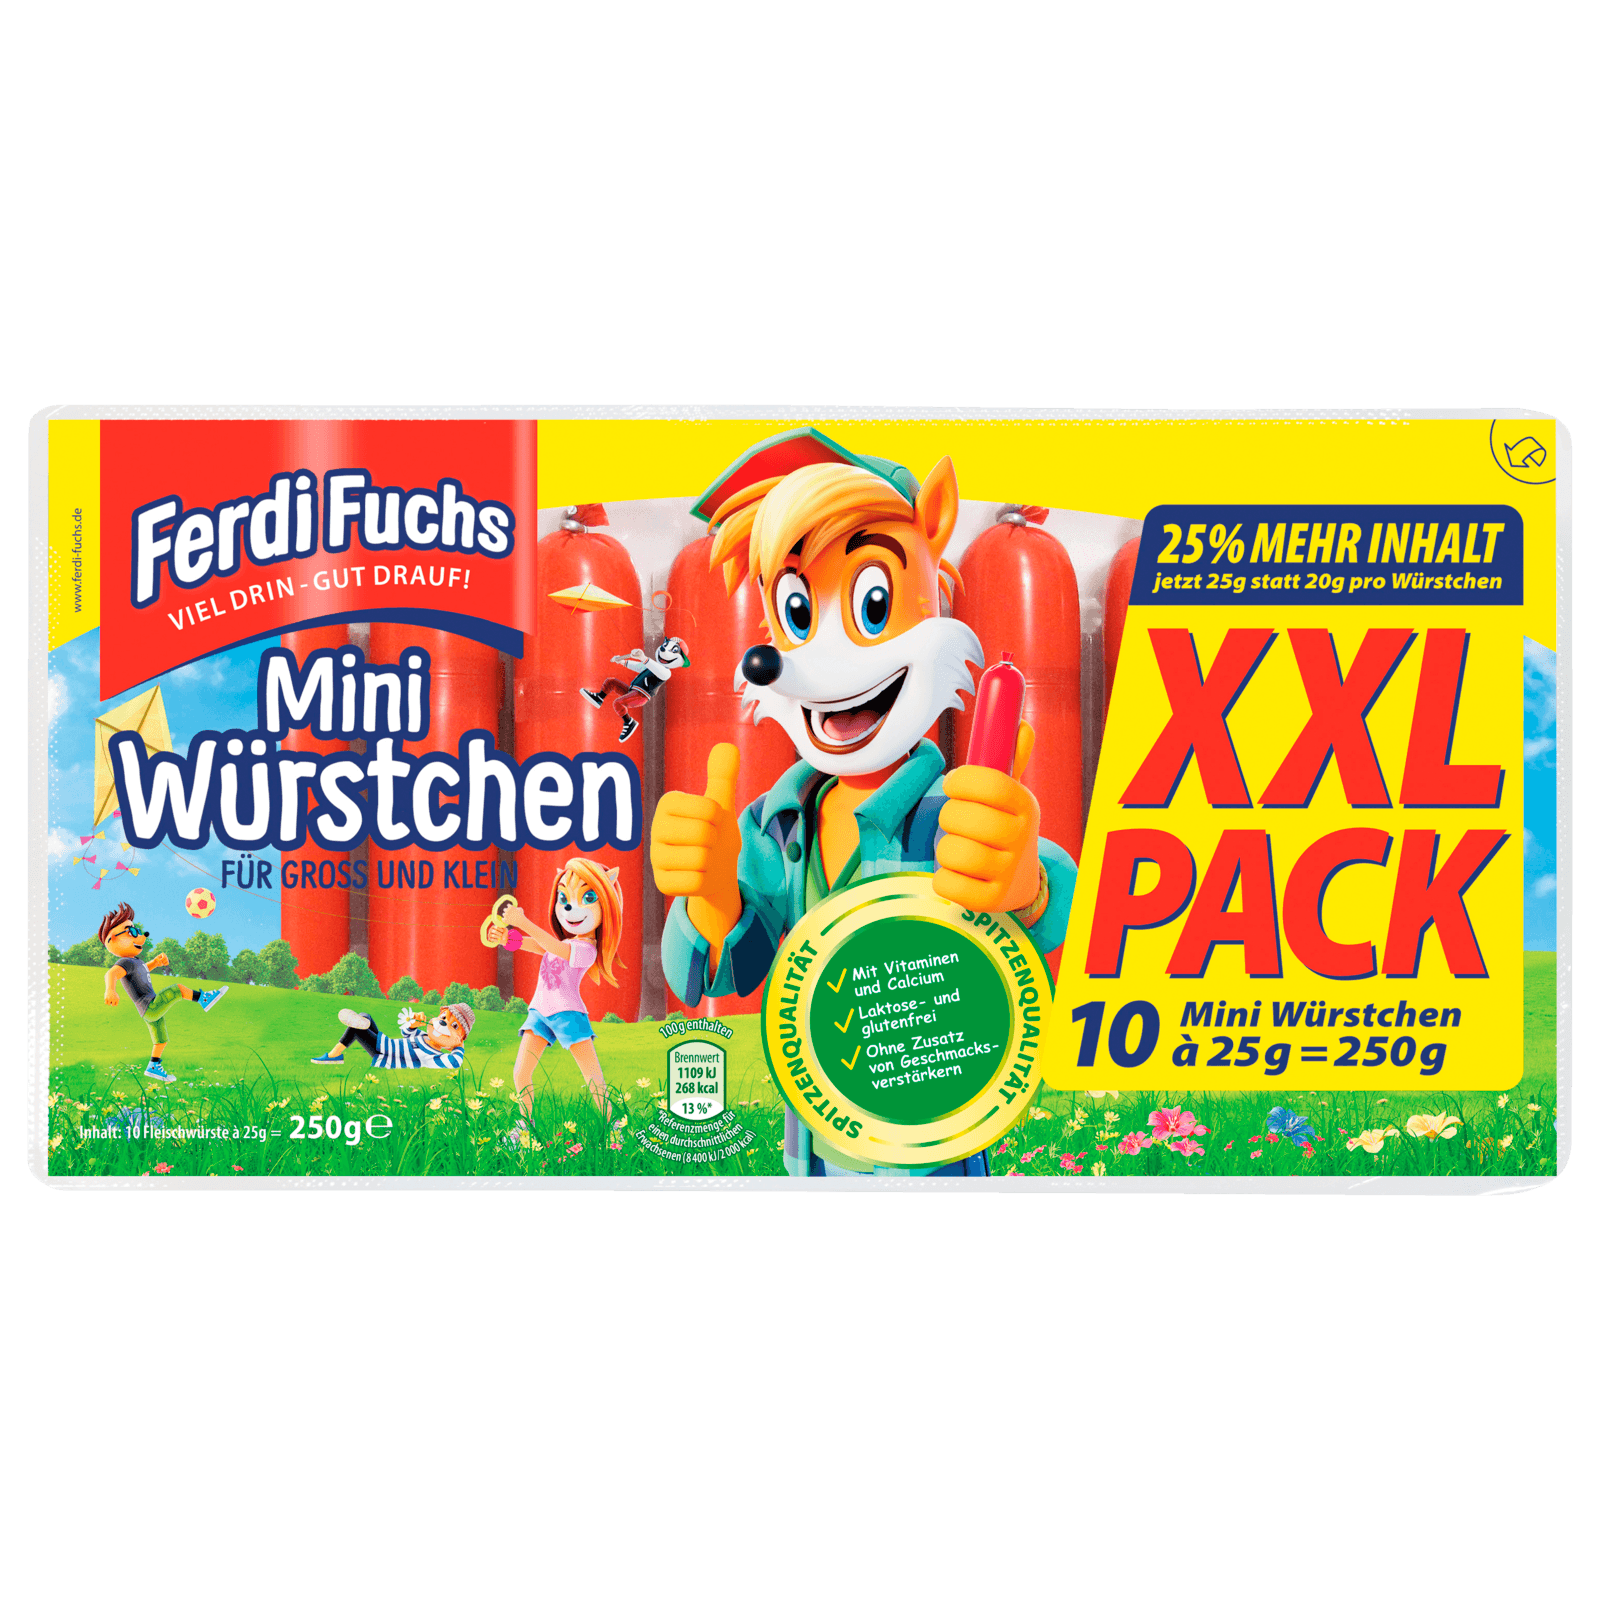 Ferdi Fuchs XXL-Pack Mini-Würstchen 10x25g bei REWE online bestellen!